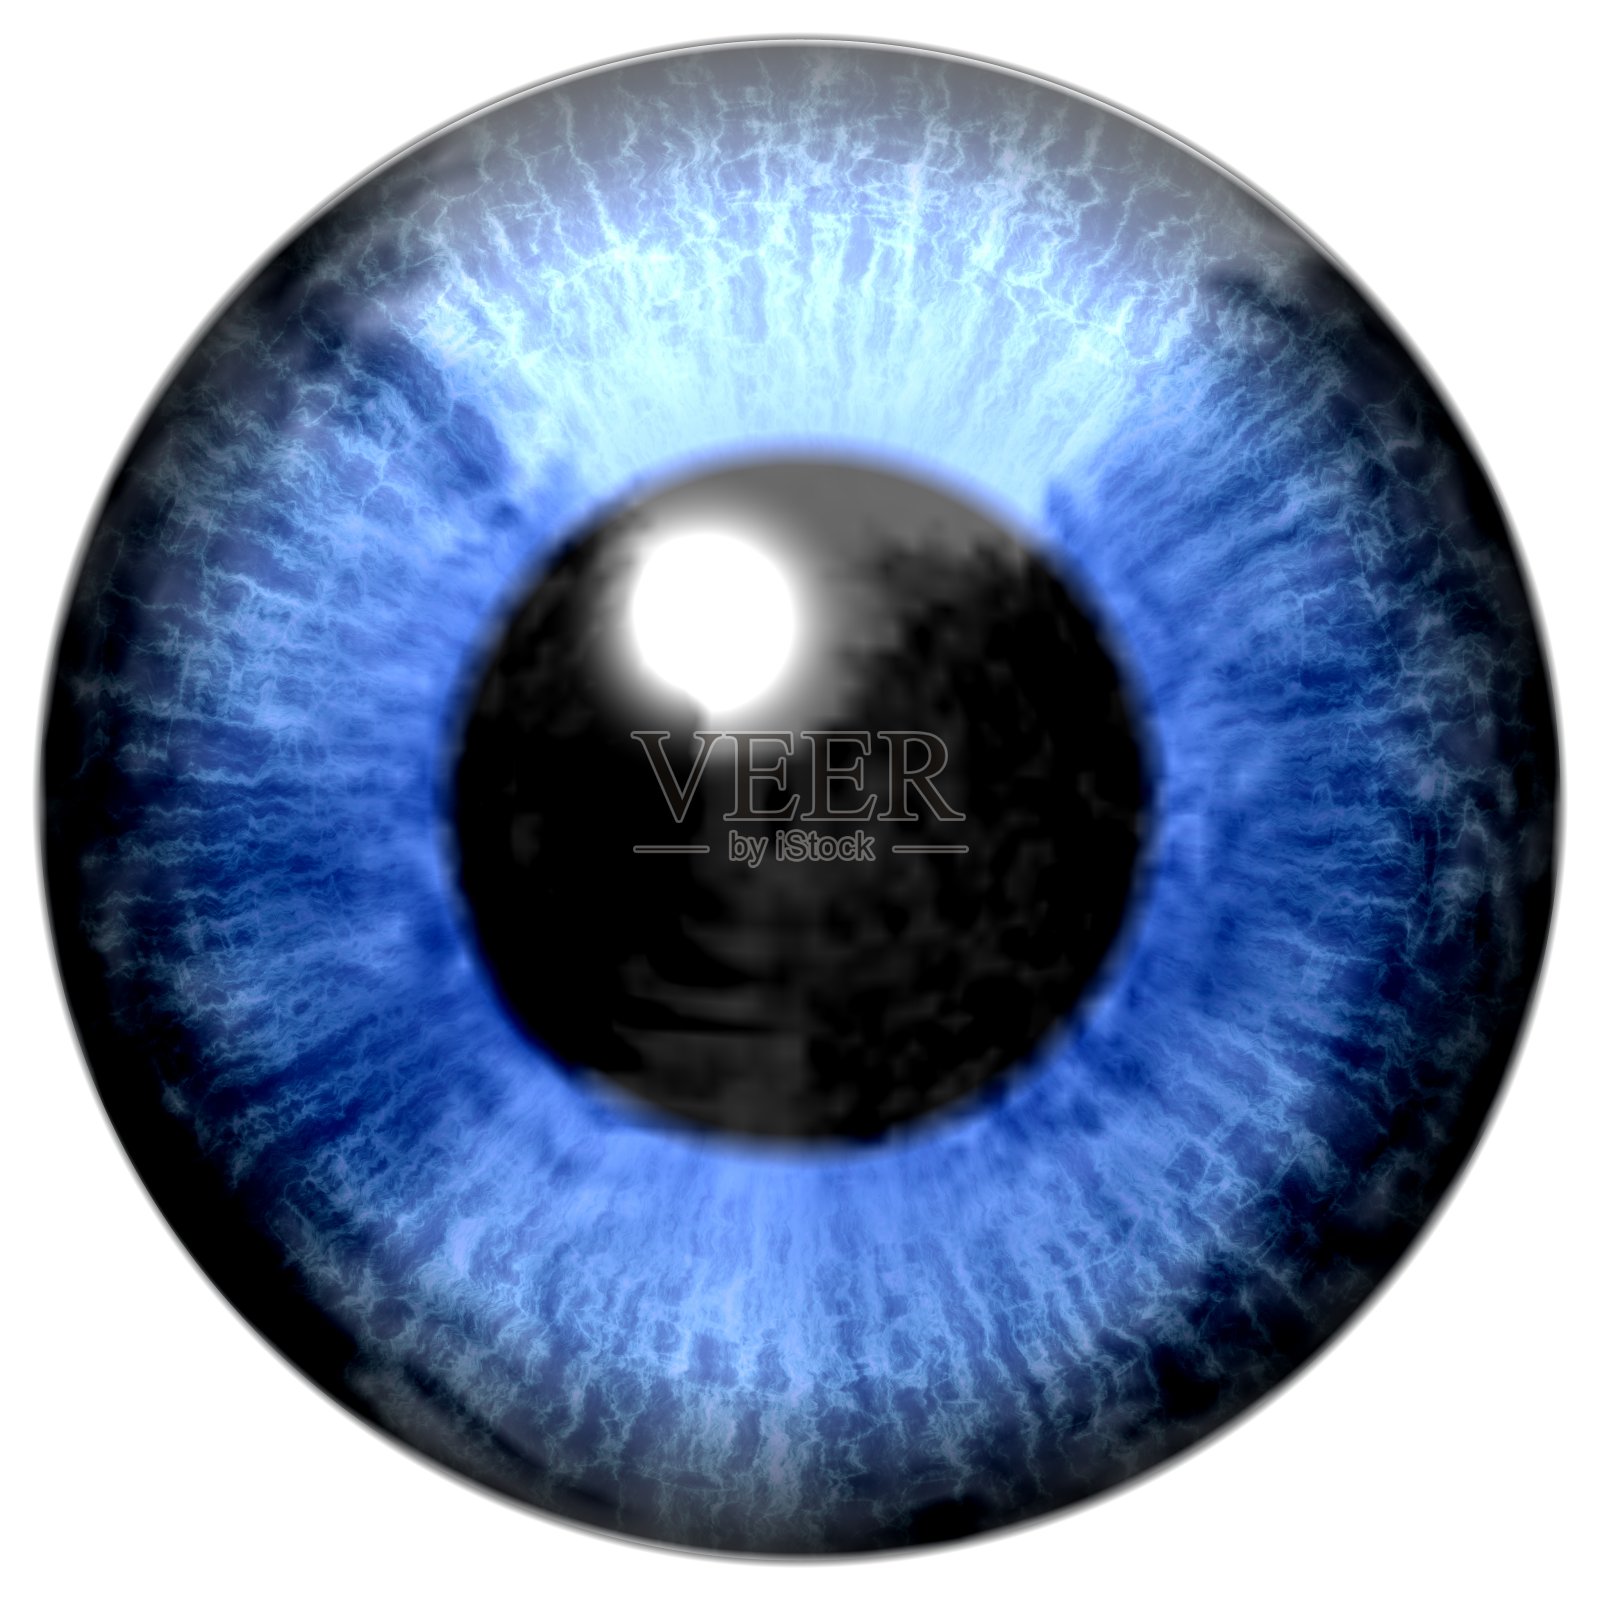 眼睛的细节有蓝色虹膜和黑色瞳孔照片摄影图片